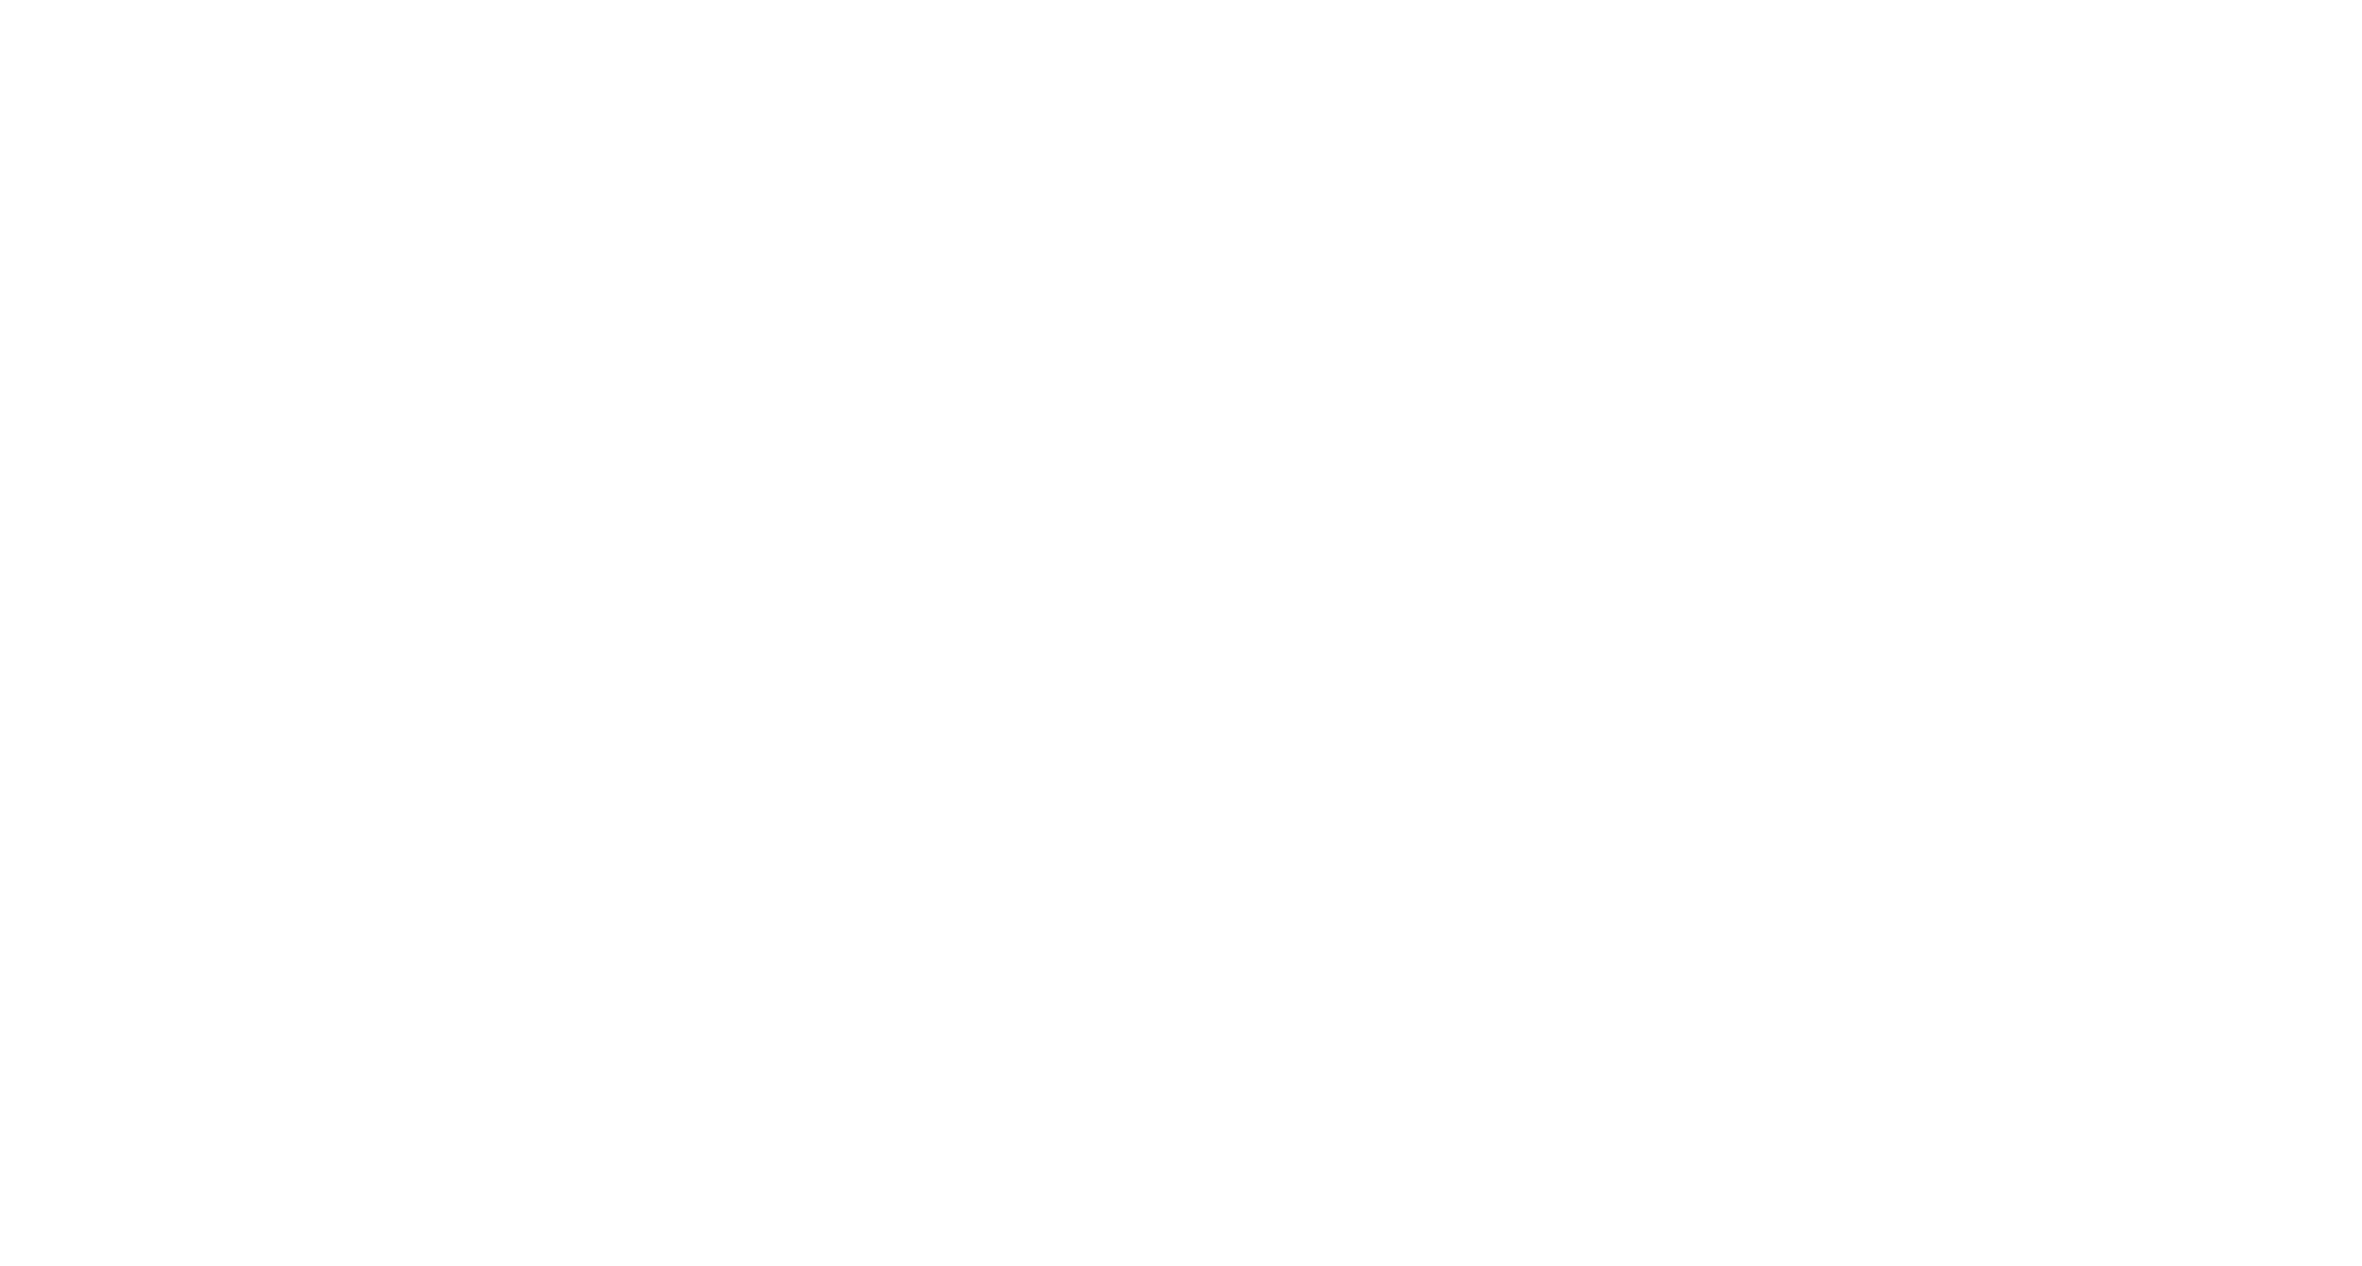 Let's get organised